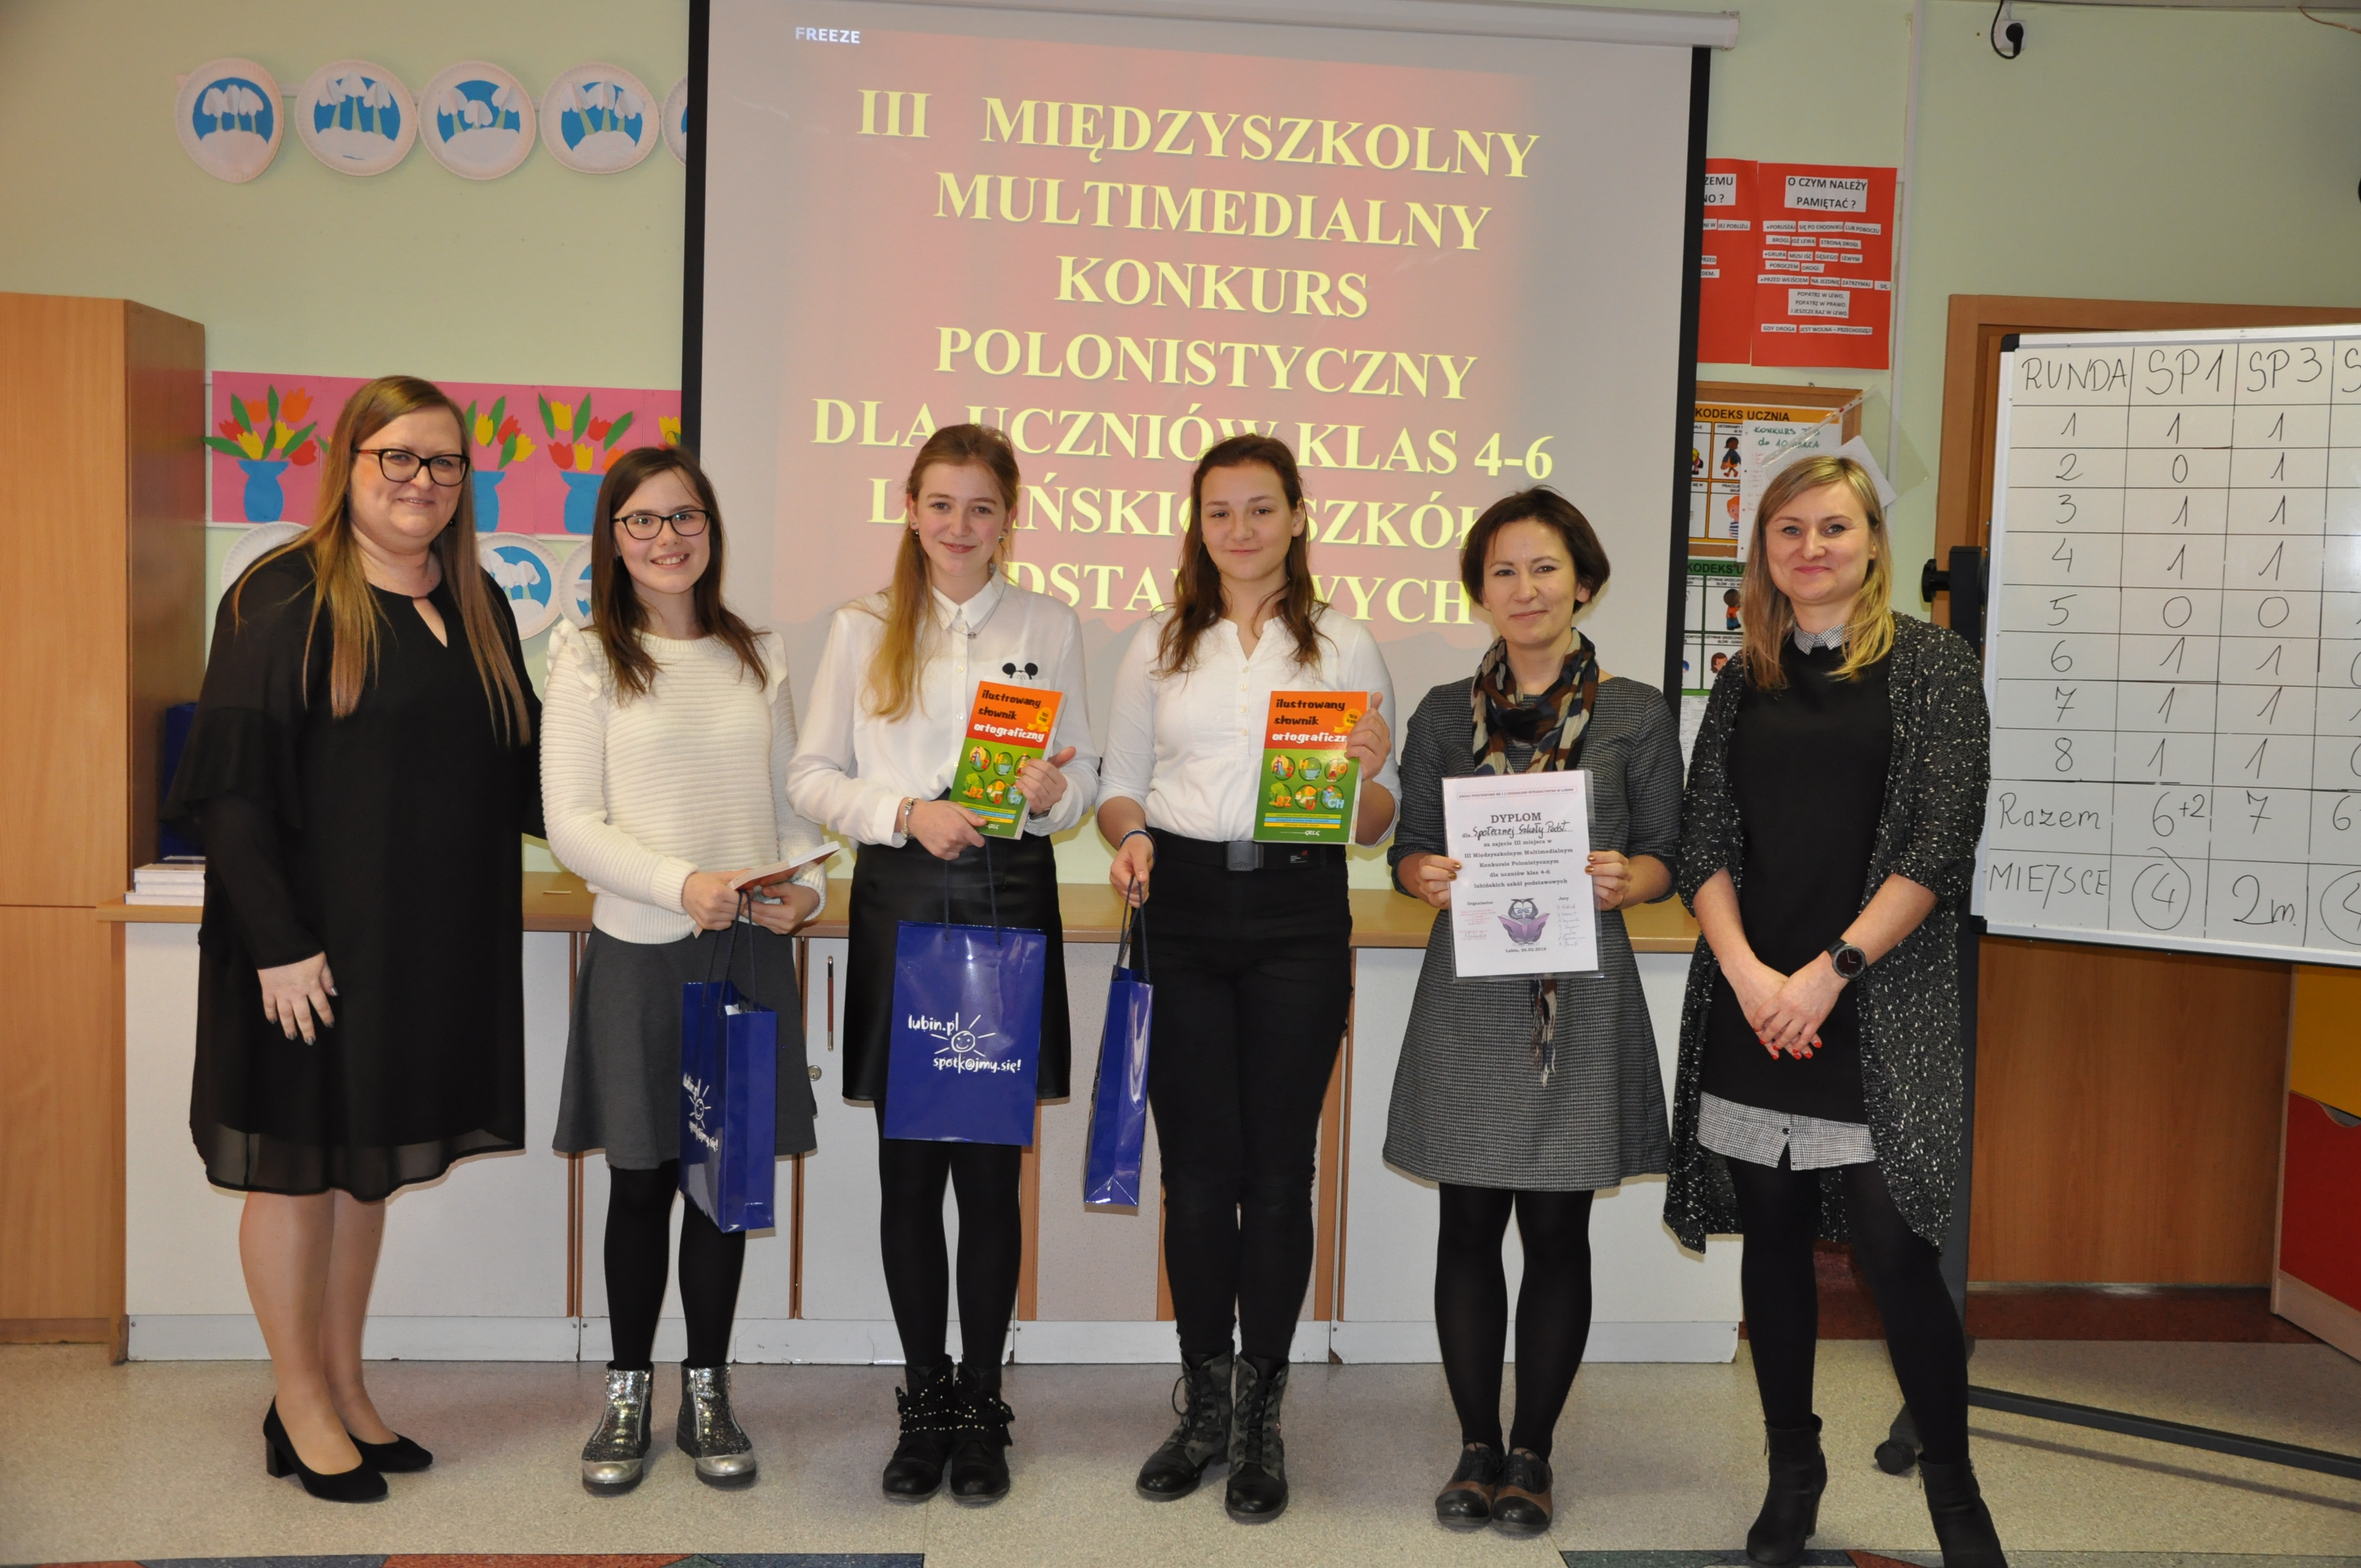 III Międzyszkolny Multimedialny Konkurs Polonistyczny